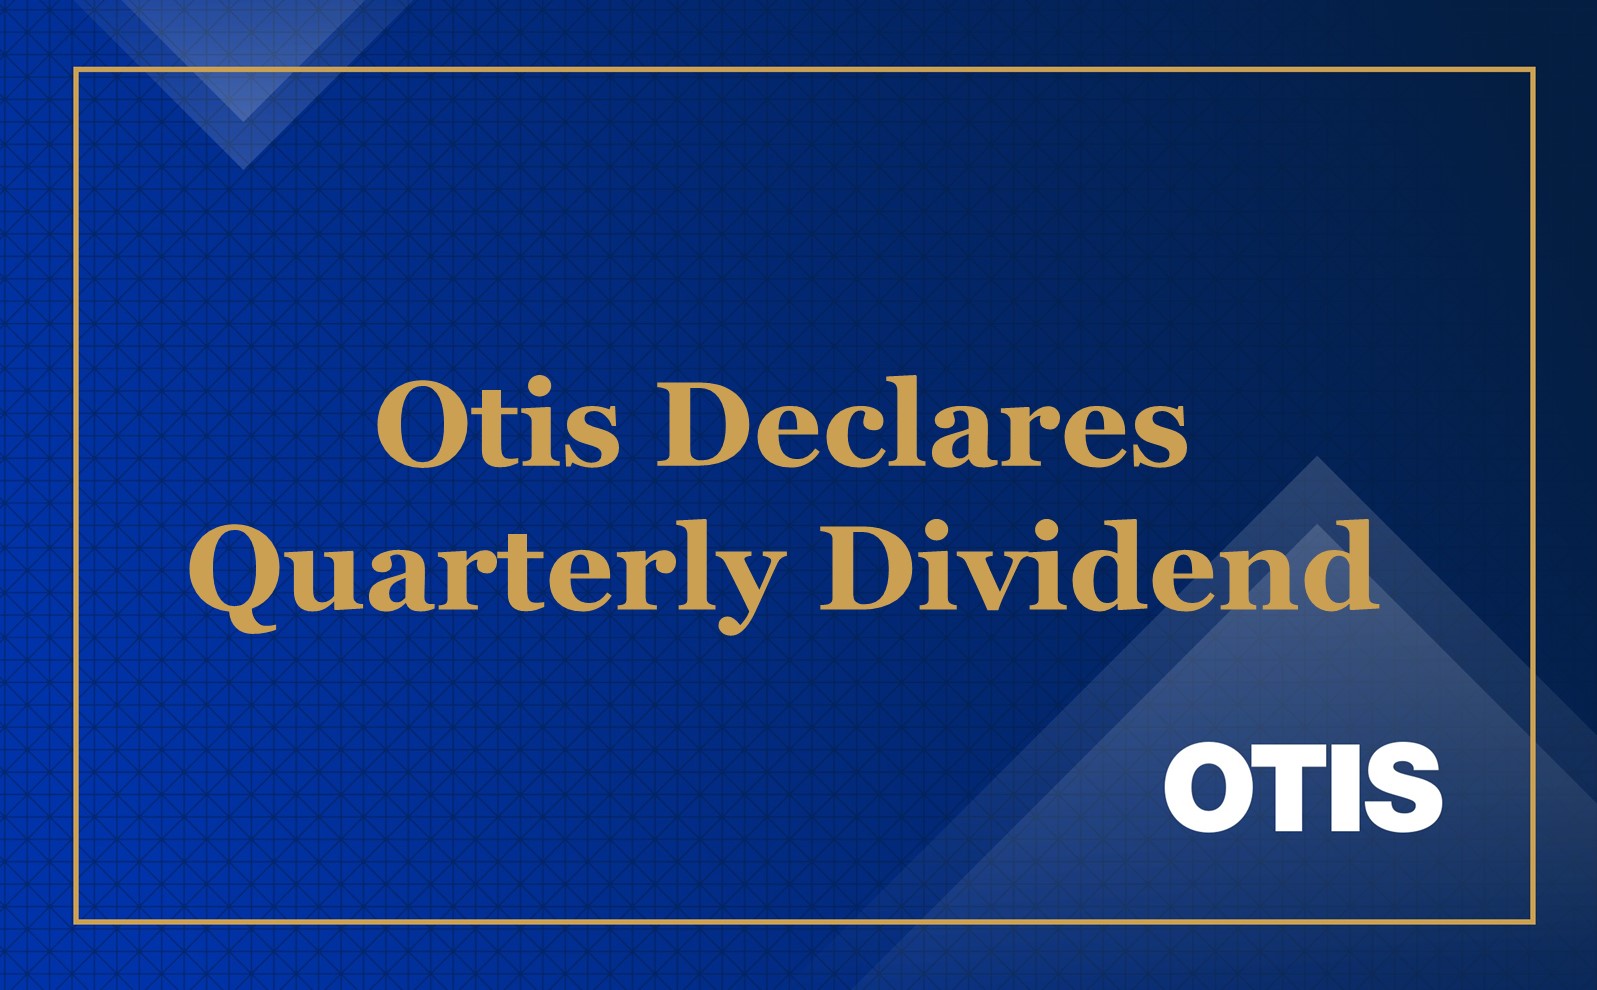 Otis Declares Quarterly Dividend of $0.24 per Share 